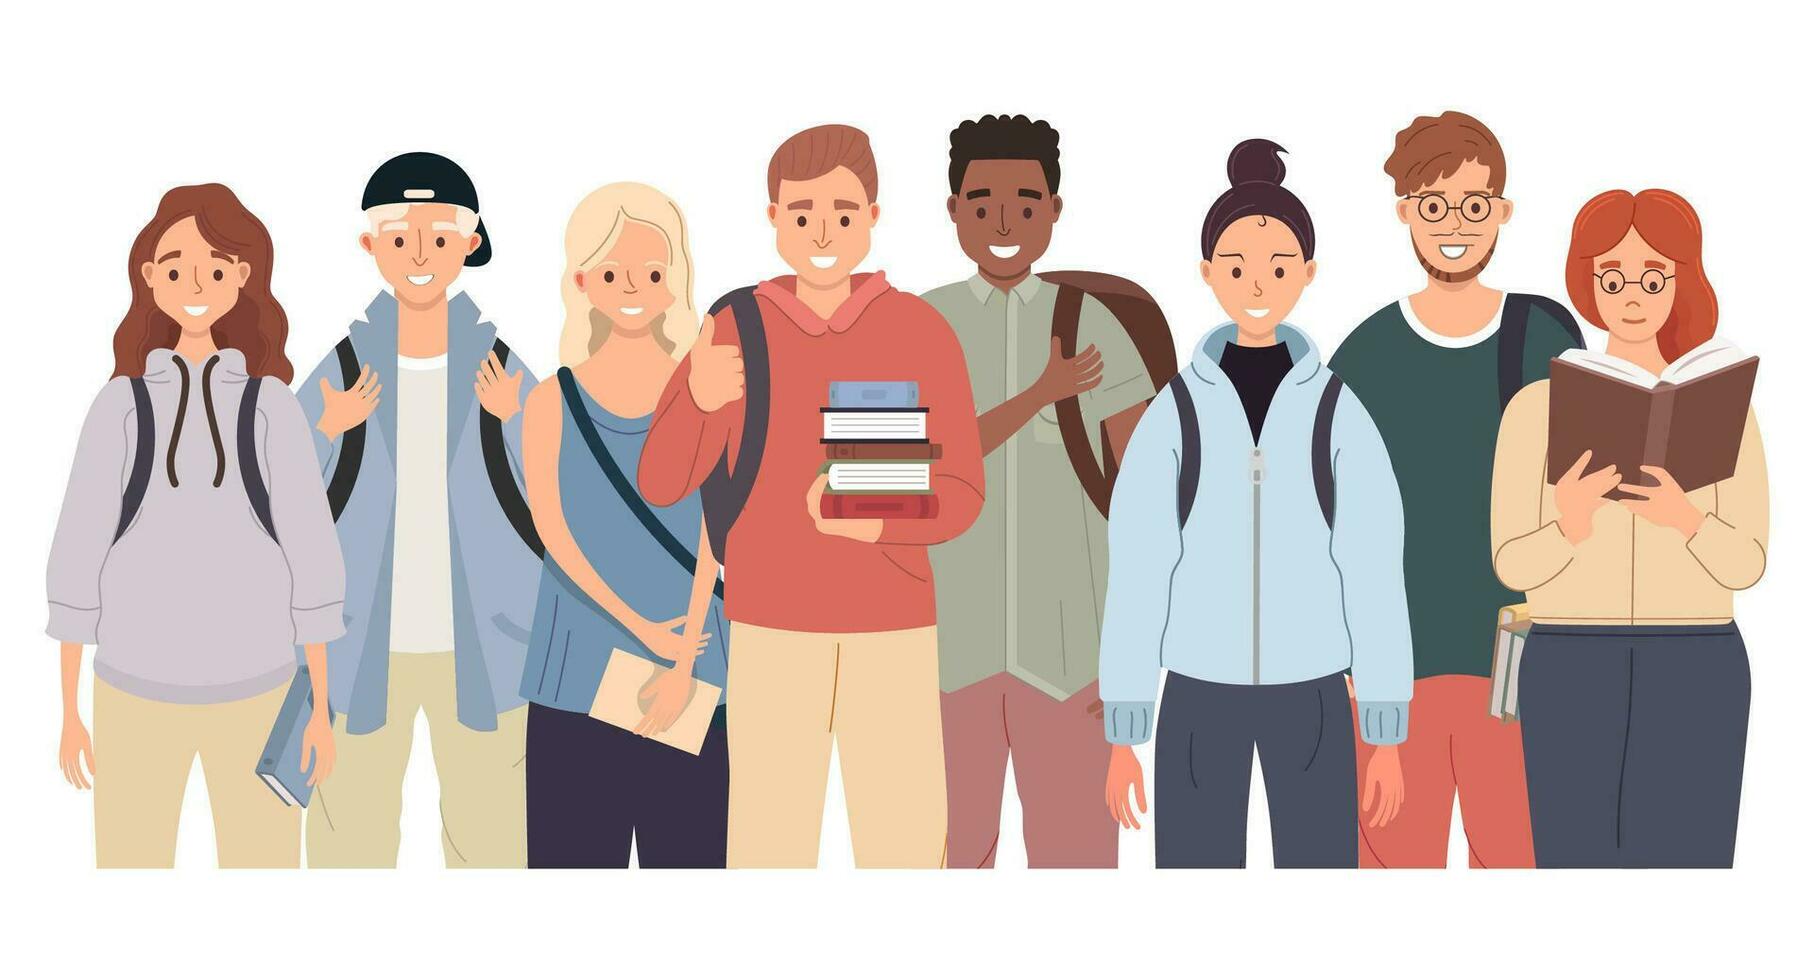 verschillend college leerling groep met rugzakken en boeken staand samen. jong mensen klasgenoten in gewoontjes kleren. vector